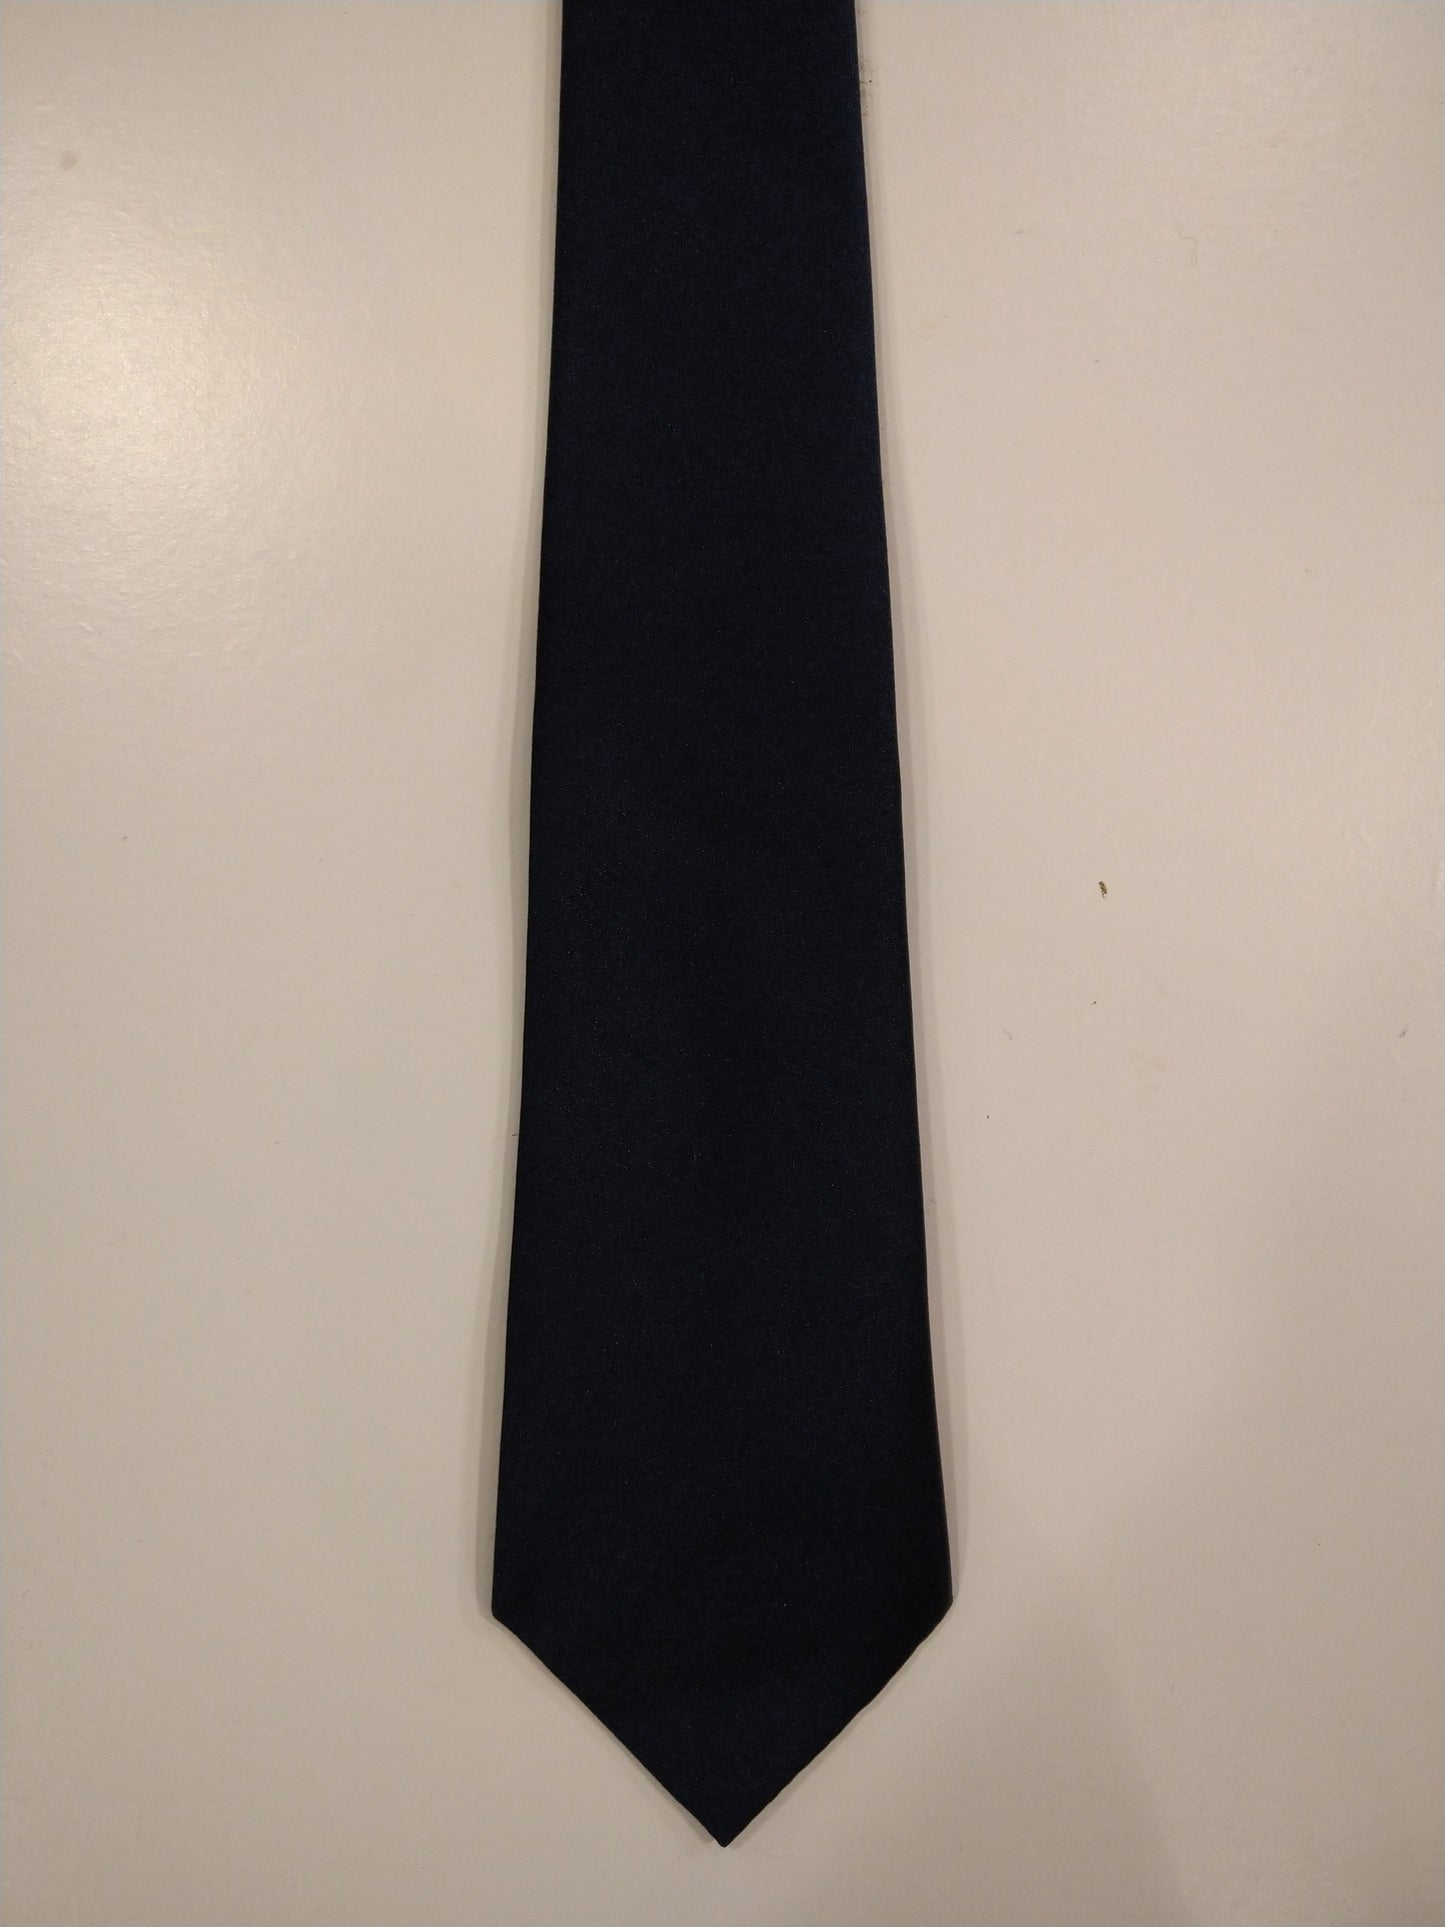 Asdale zachte polyester stropdas. Glanzend donkerblauw.